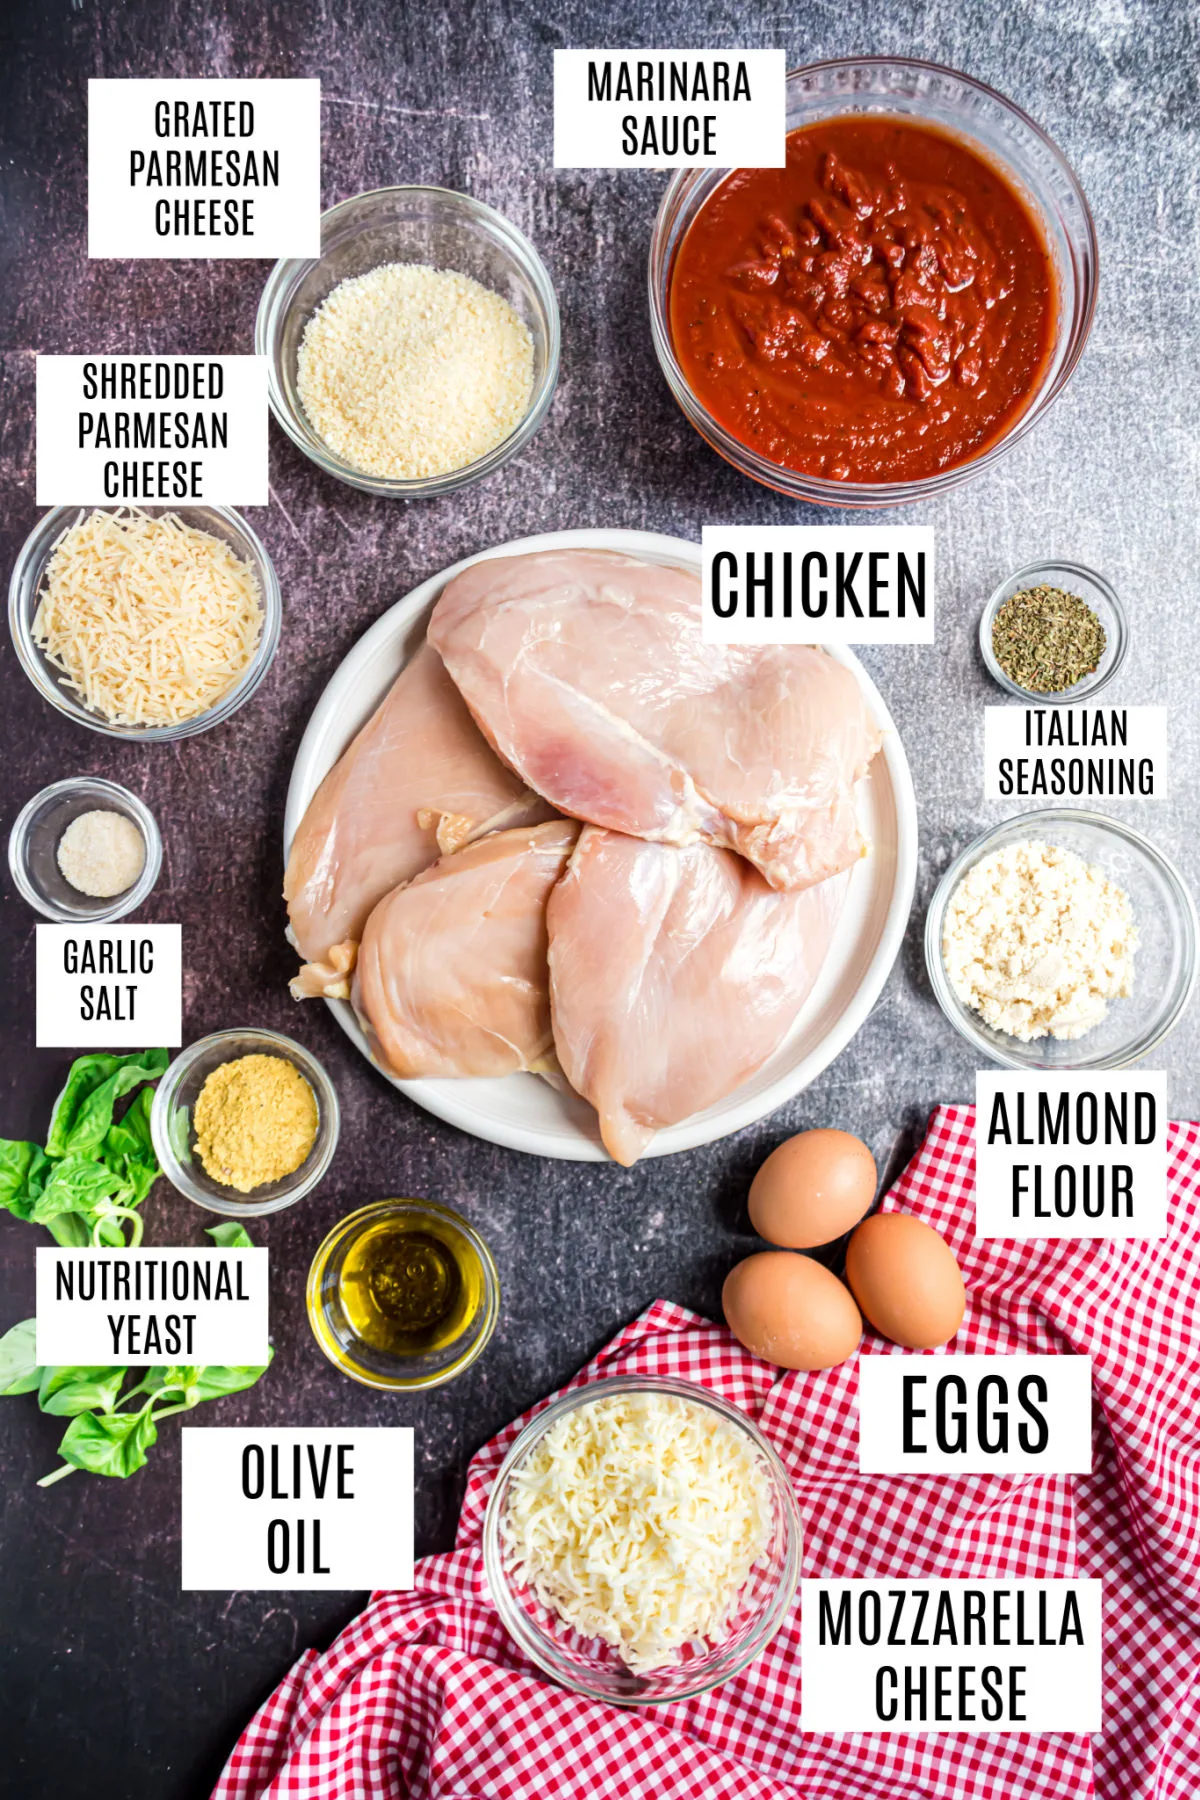 Ingredients needed to make gluten free chicken parmesan with almond flour.